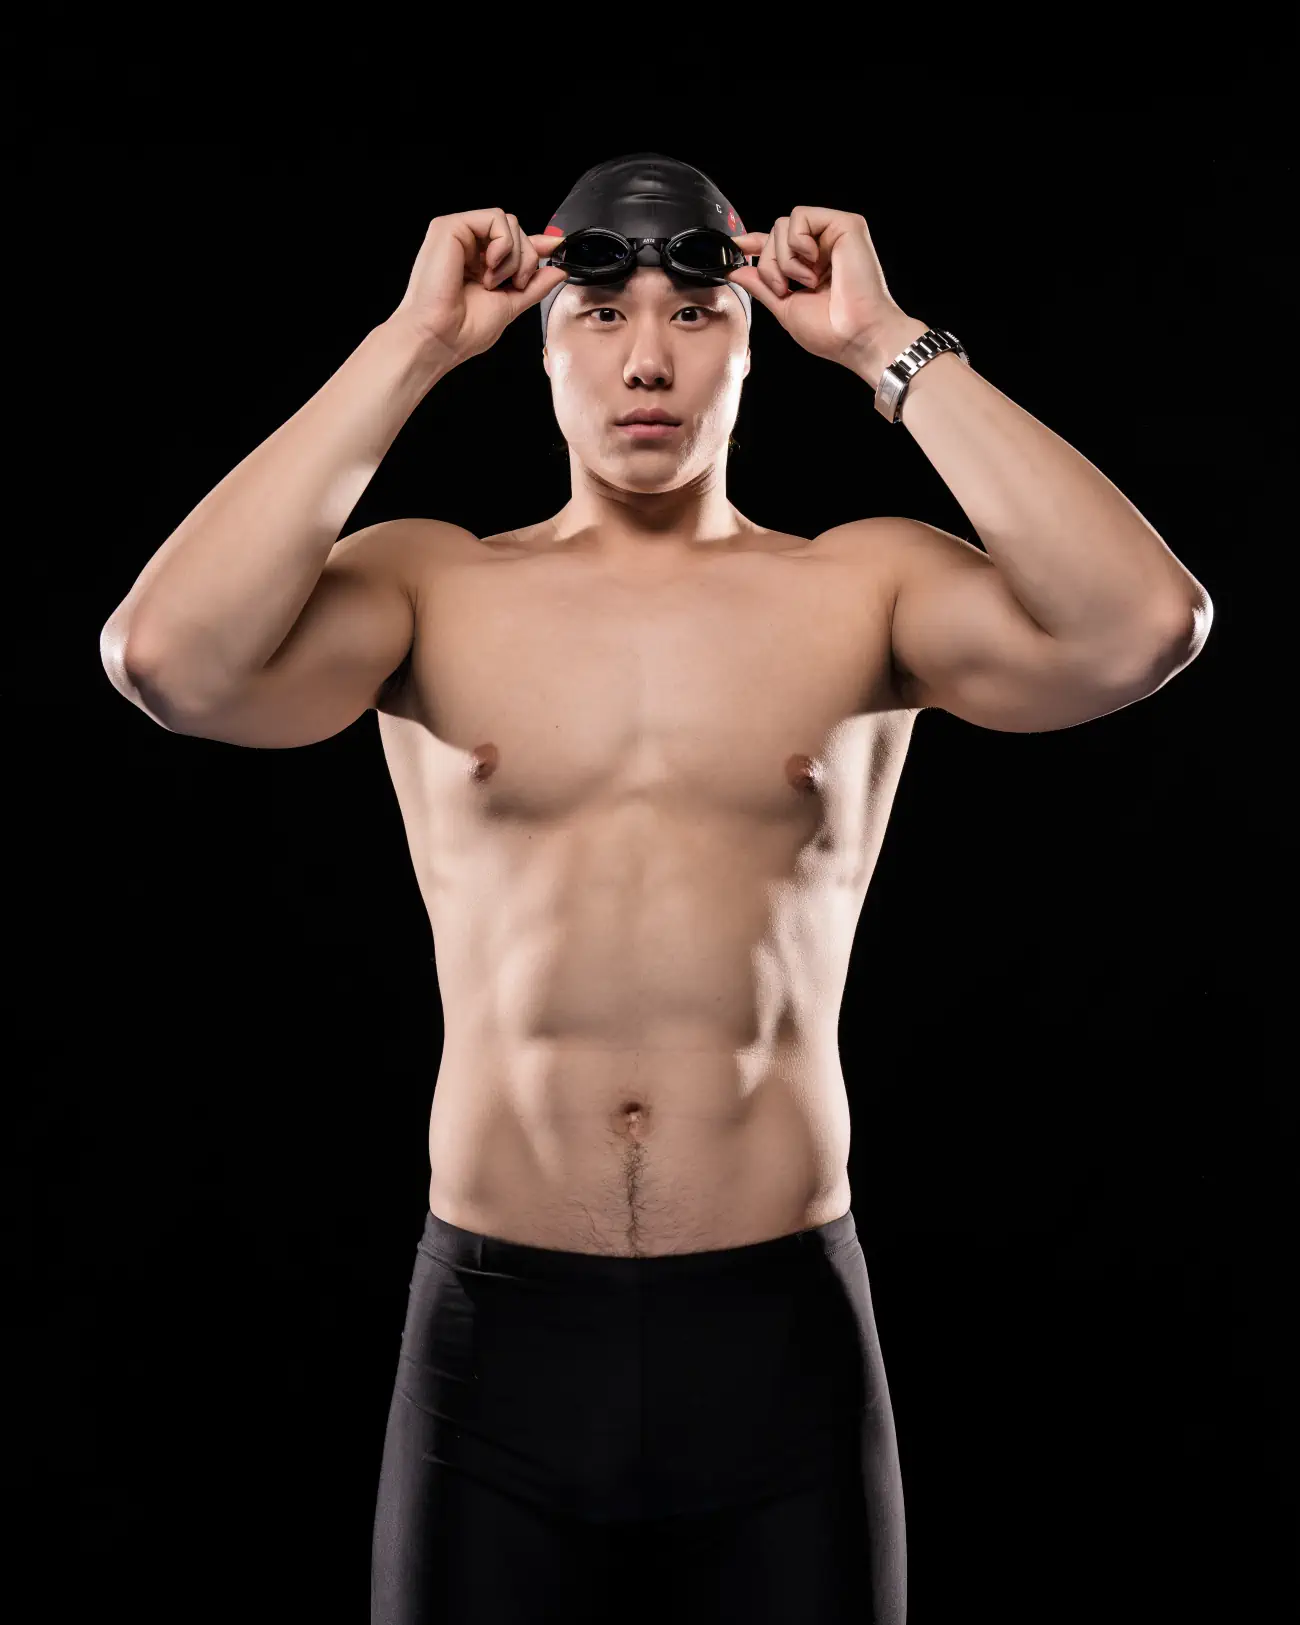 Rising swimming star Qin Haiyang named TAG Heuer's new sport brand ambassador